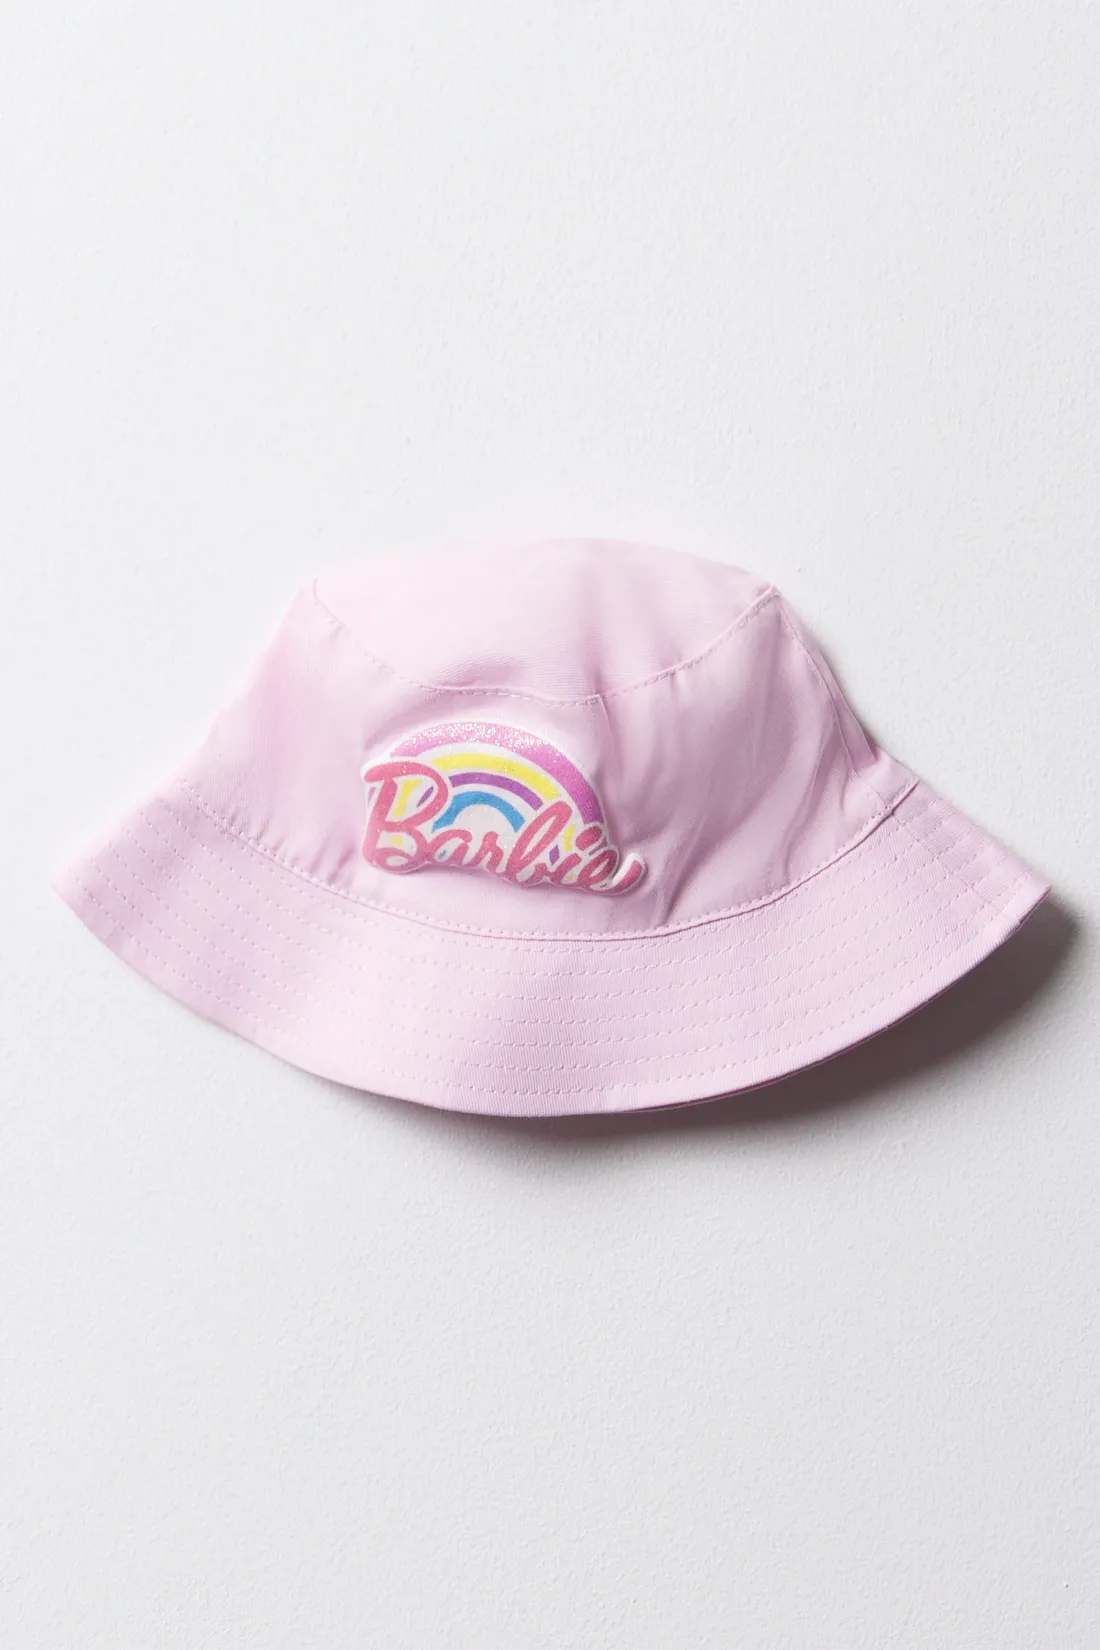 Barbie bucket hat pink